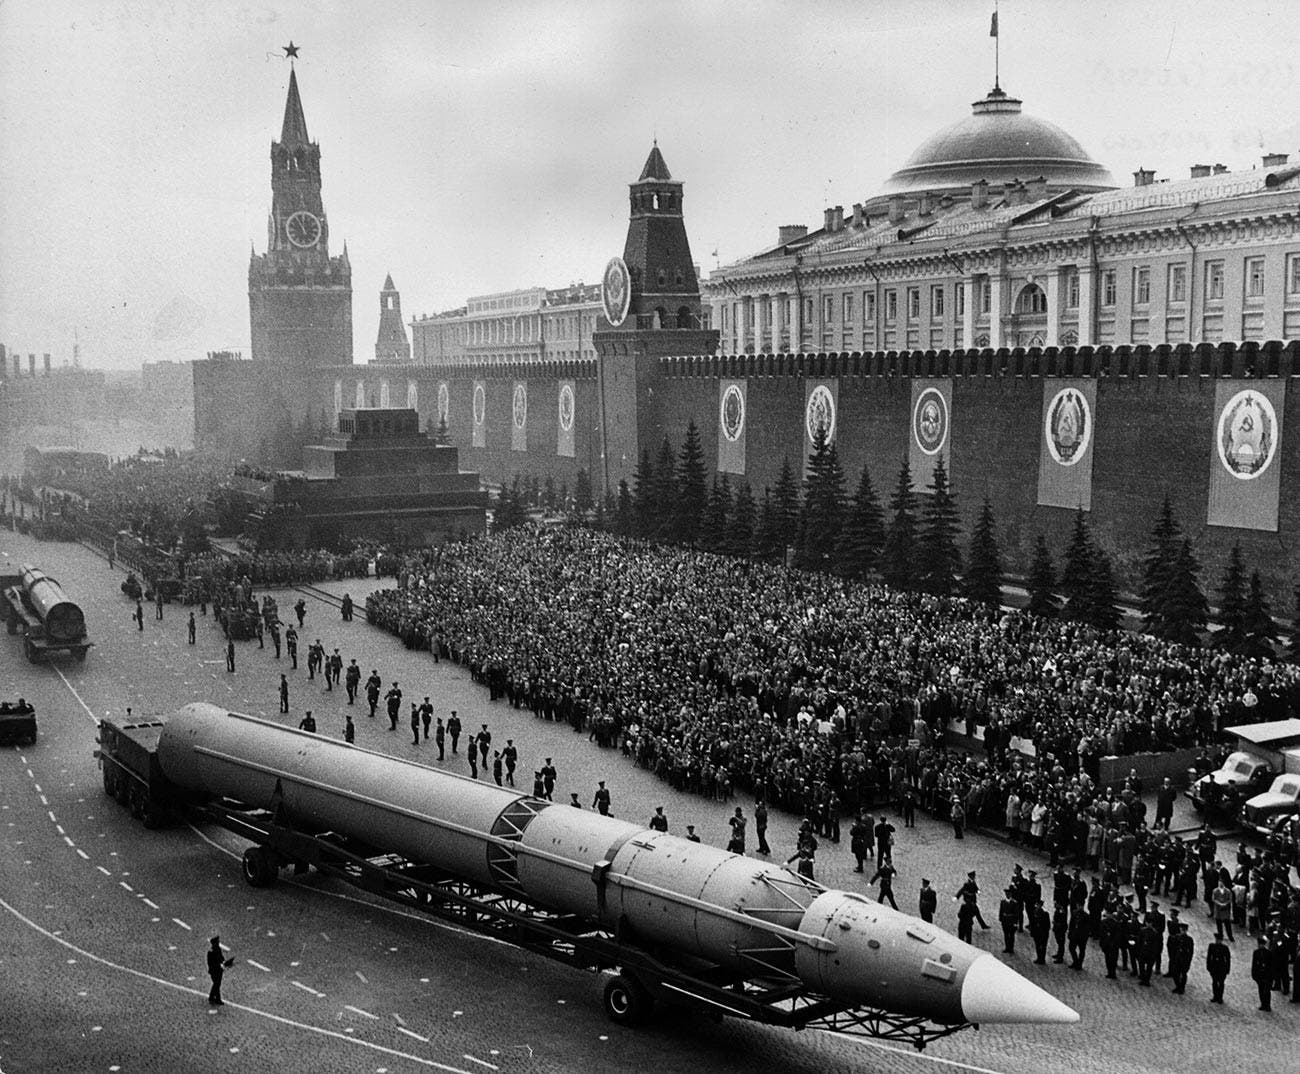 صورة لأحد الصواريخ السوفيتية بالقرن الماضي